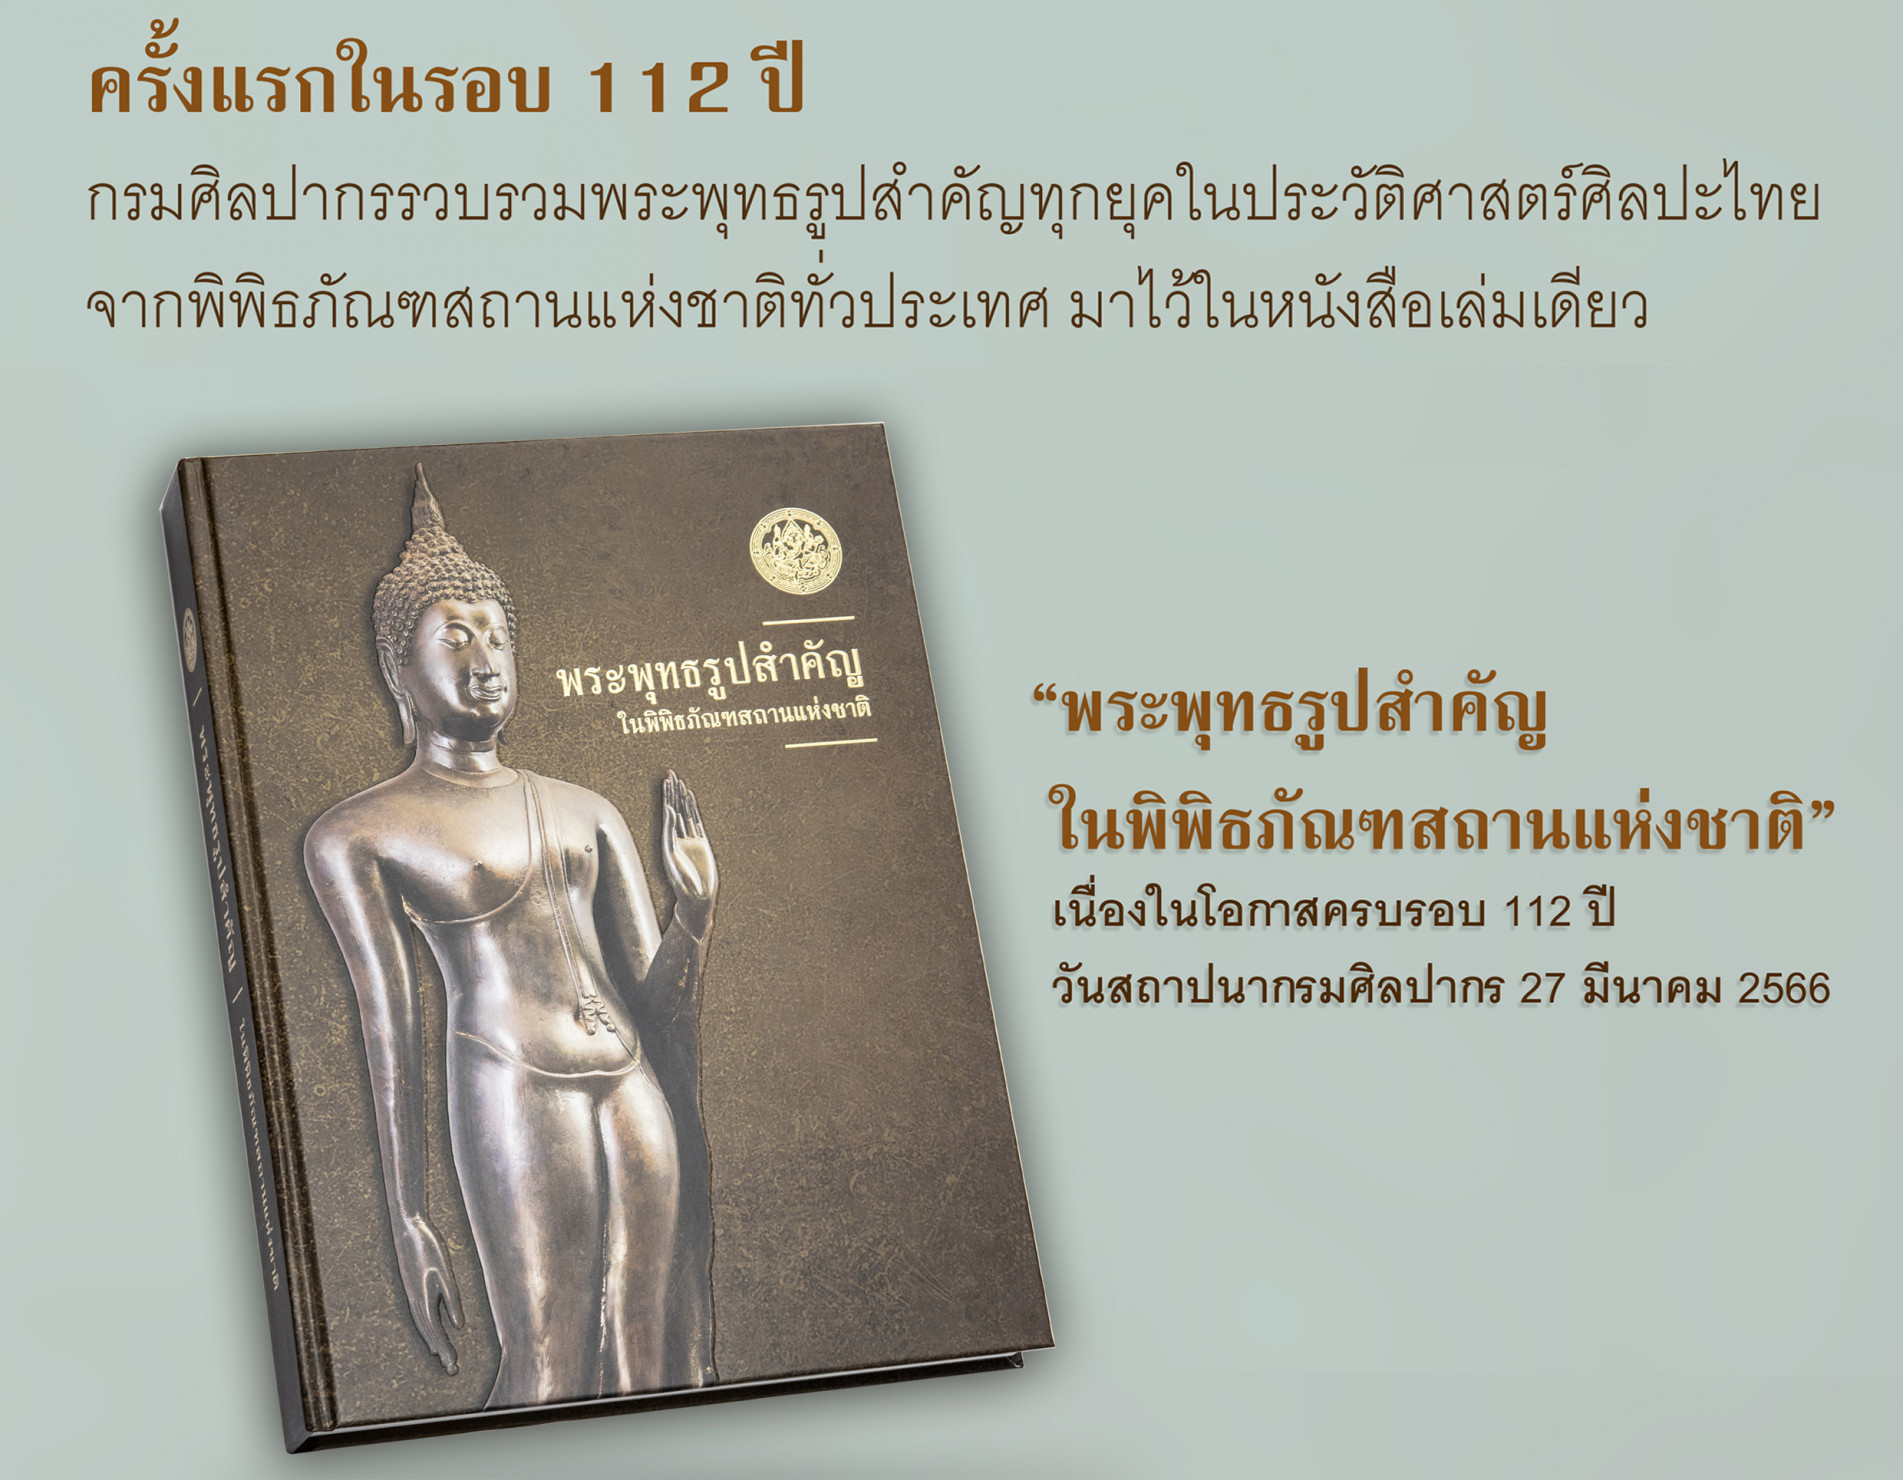 กรมศิลปากรจัดพิมพ์หนังสือ “พระพุทธรูปสำคัญในพิพิธภัณฑสถานแห่งชาติ”  รวมพระพุทธรูปสำคัญในประวัติศาสตร์ศิลปะไทย